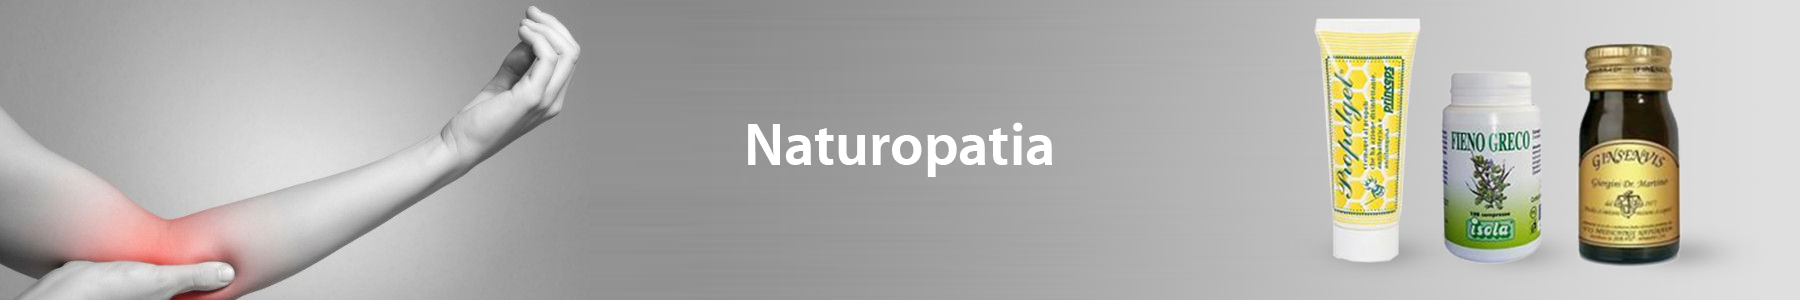 Naturopatia